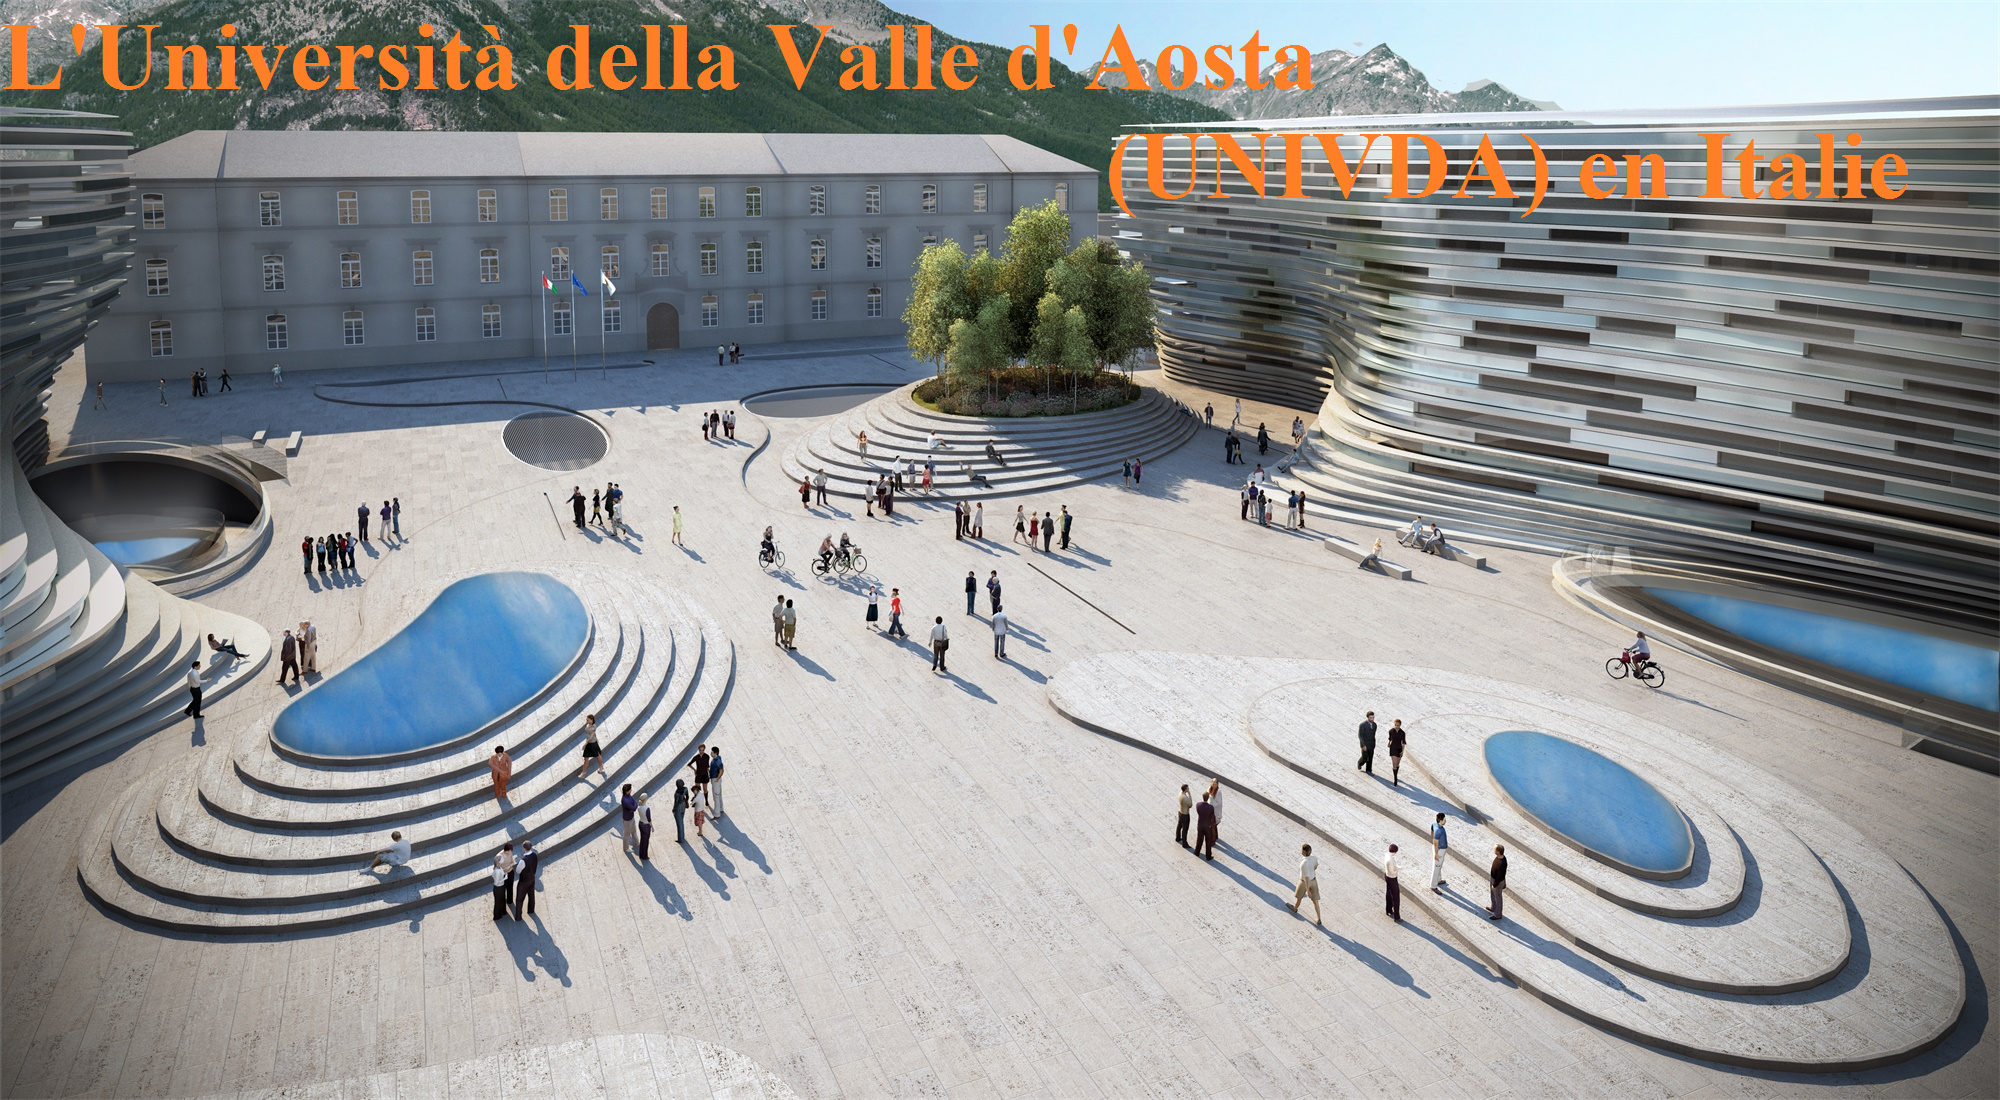 L’Università della Valle d’Aosta (UNIVDA) en Italie